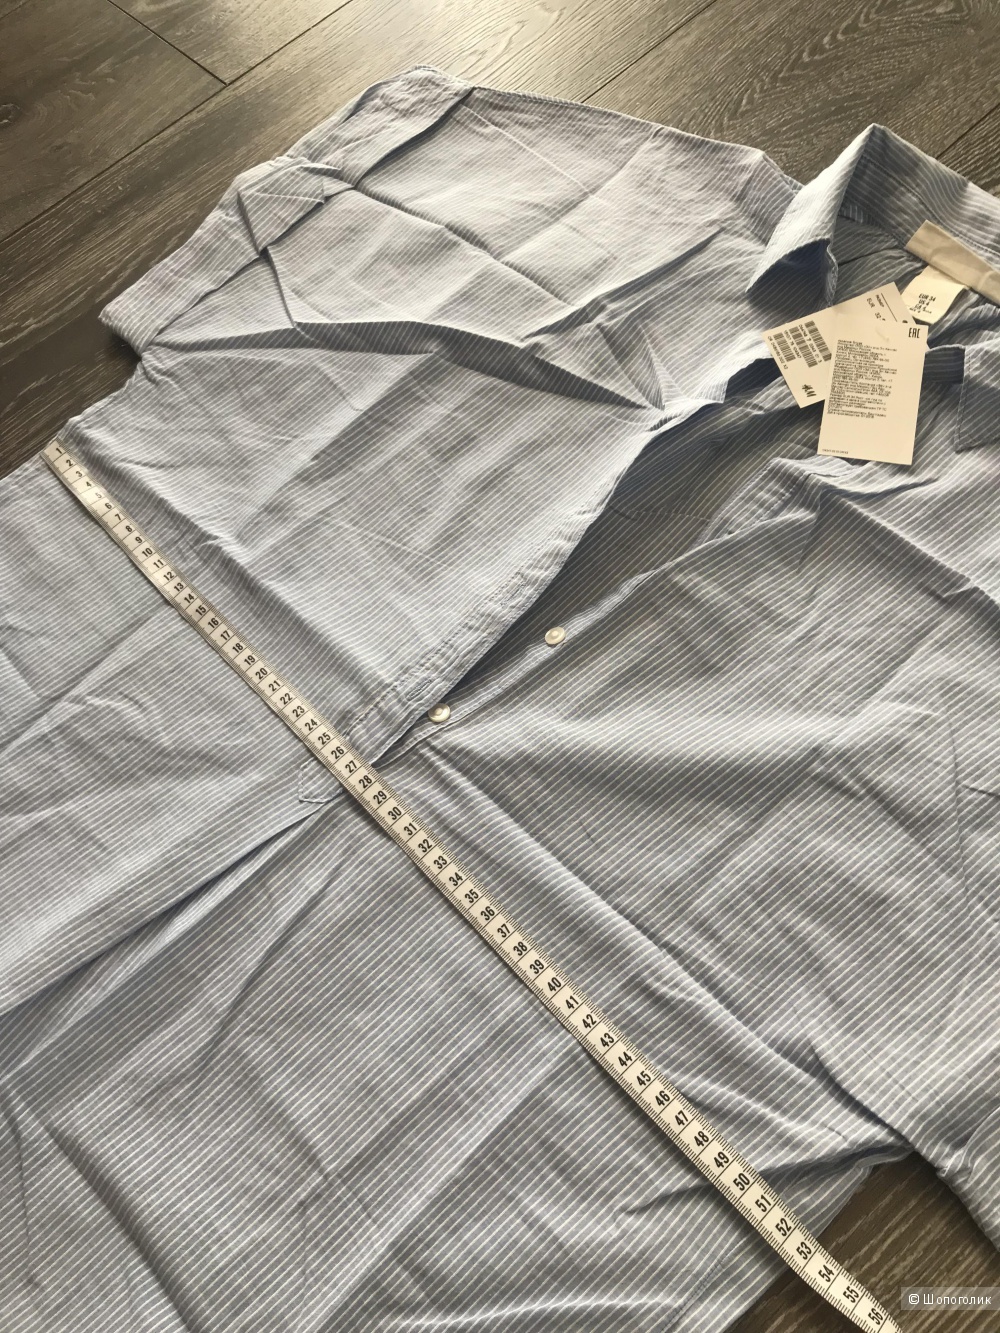 Рубашка - блузка HM 42-44